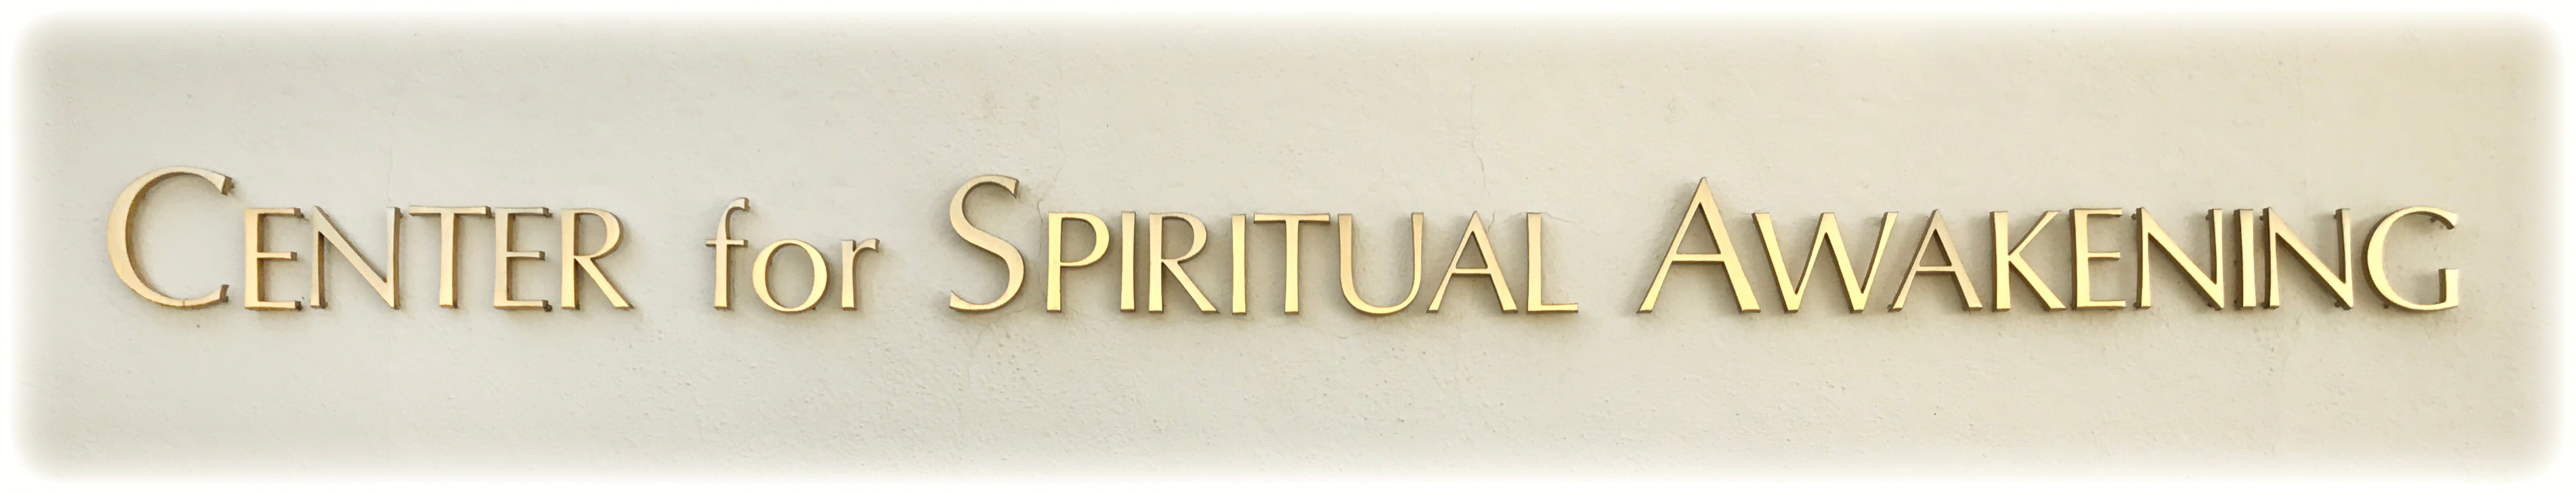 Center for Spiritual Awakening Church Rental